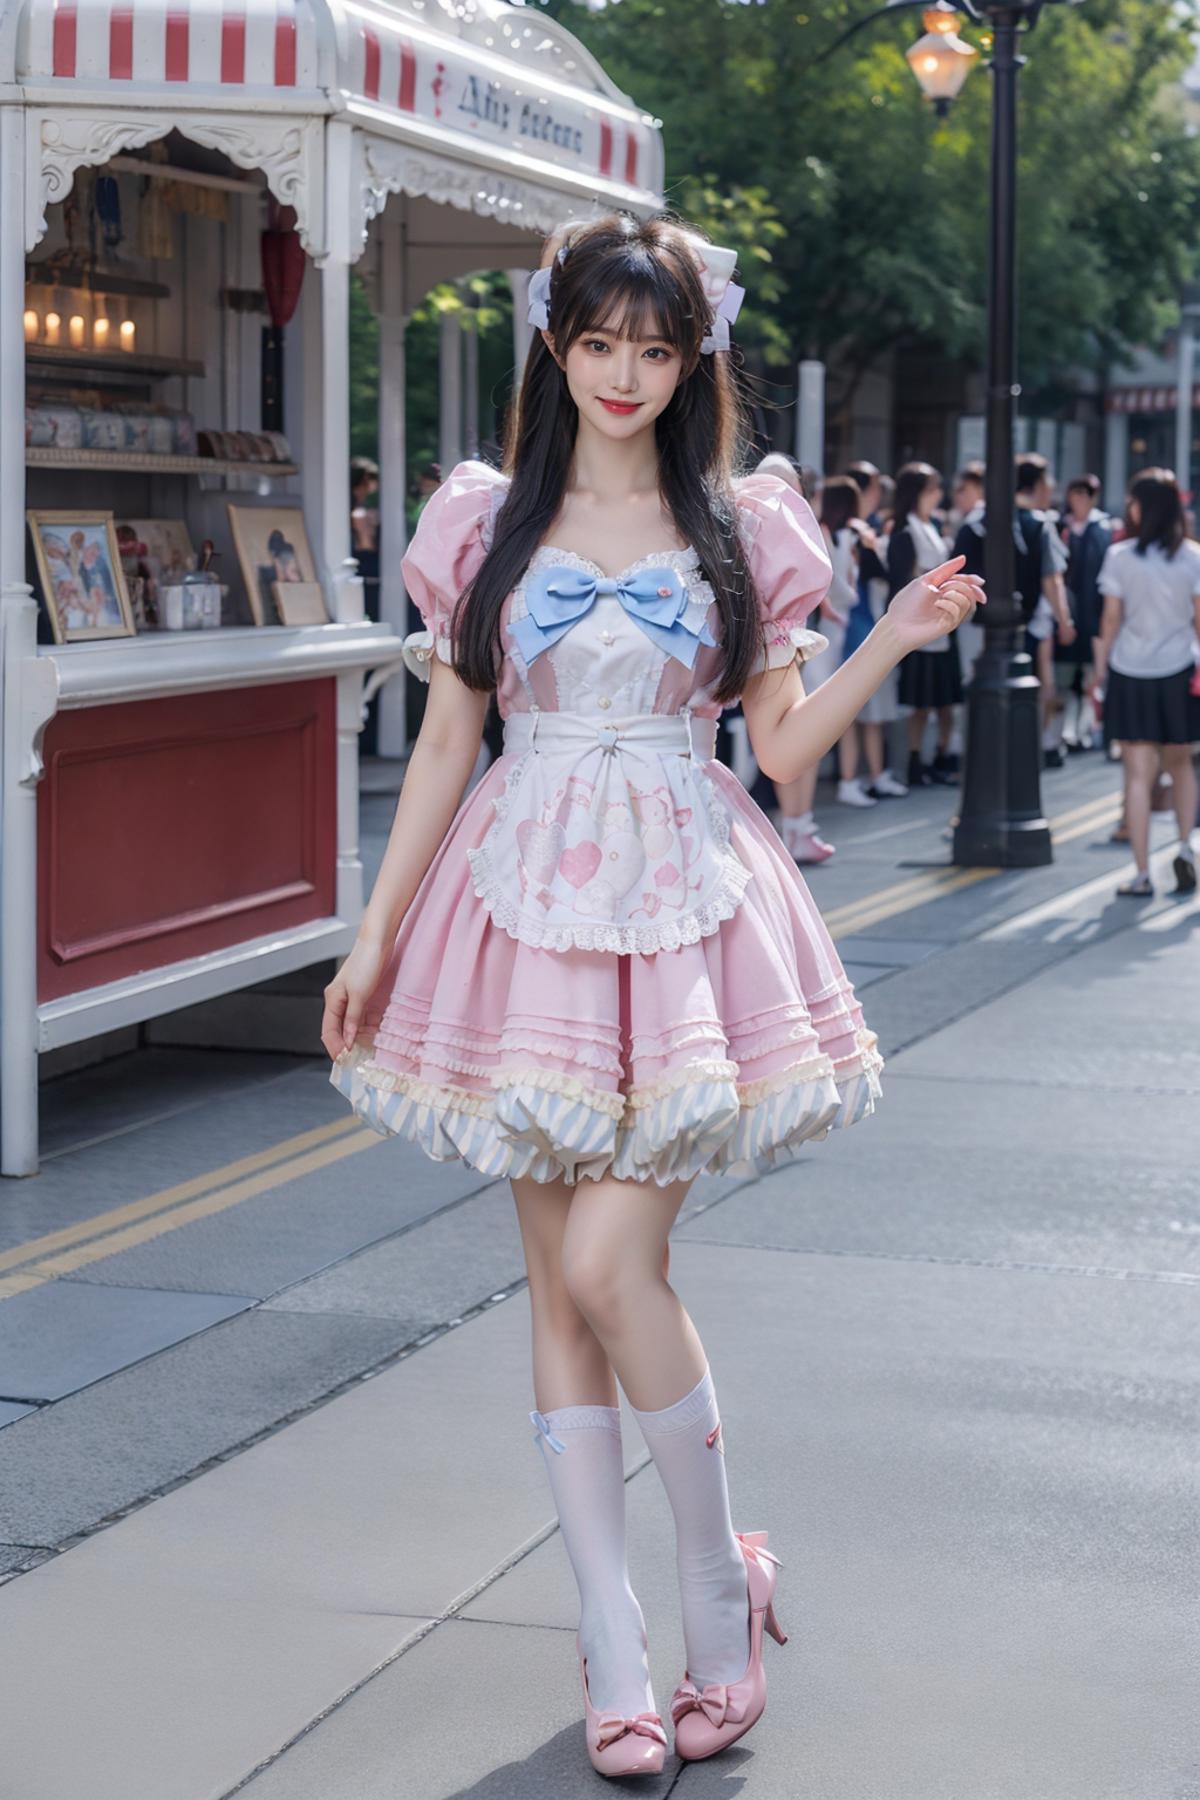 [Realistic] Sweet attire | 甜美系服装 image by cyberAngel_